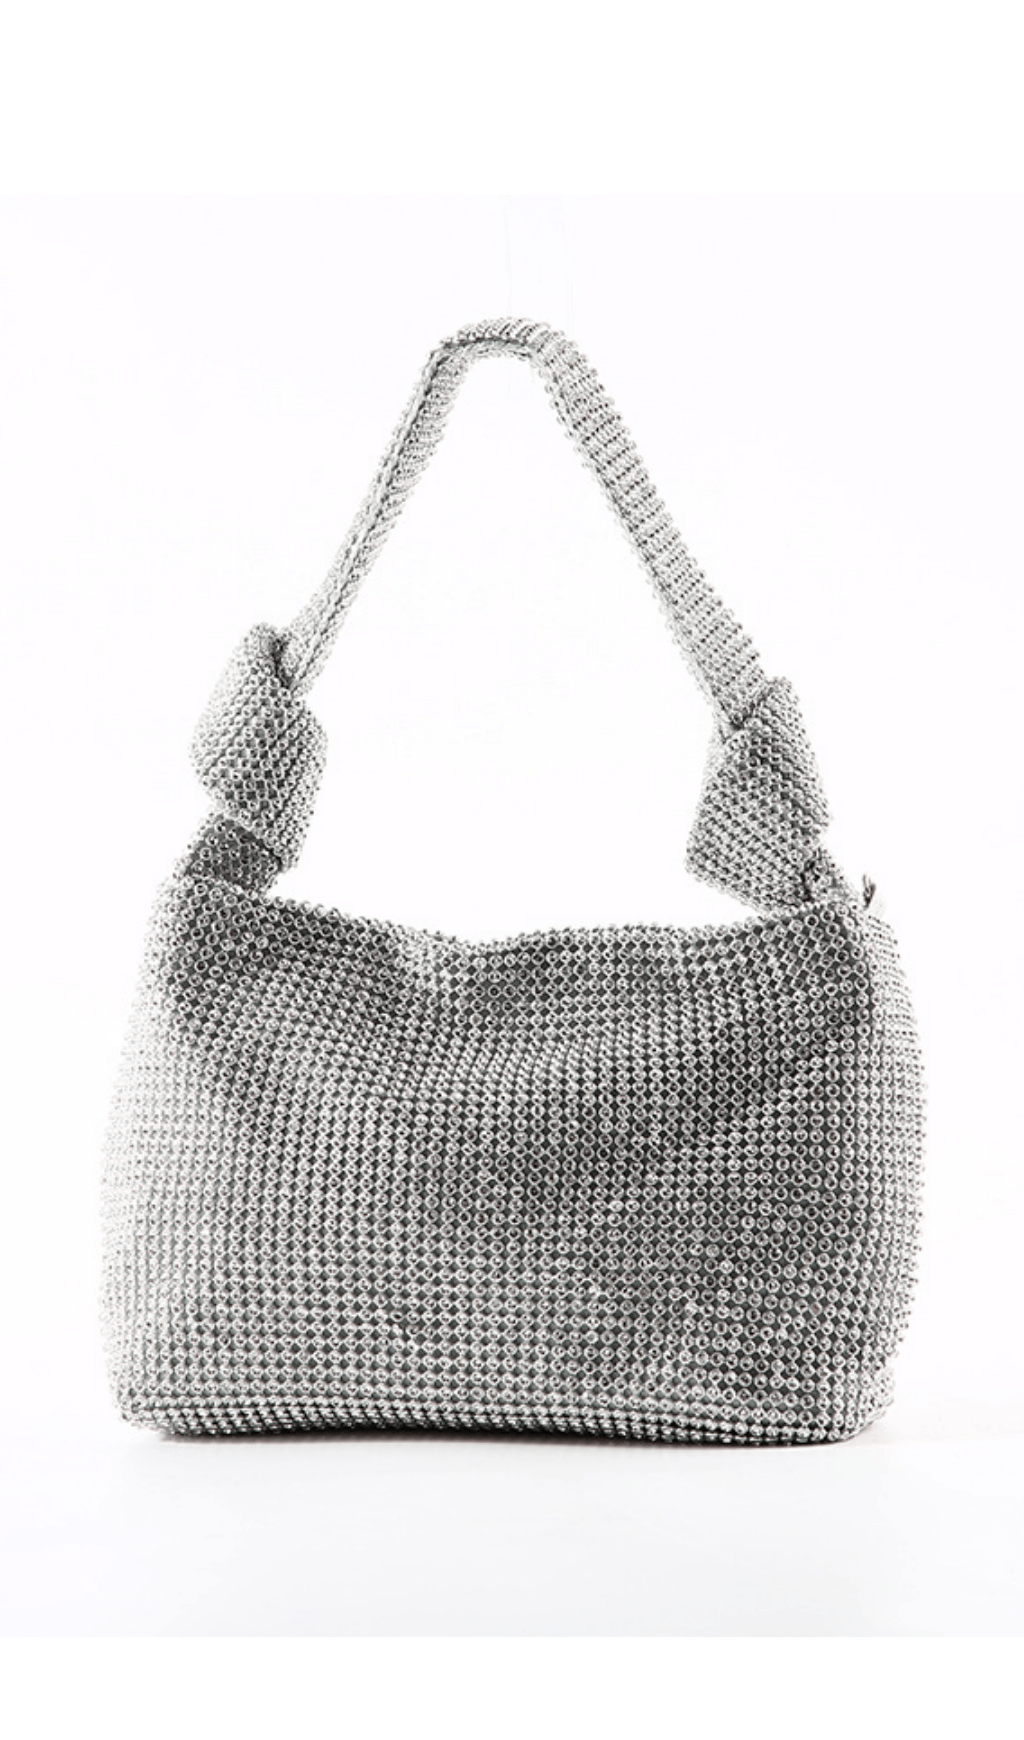 Crystal Handbag - Gold